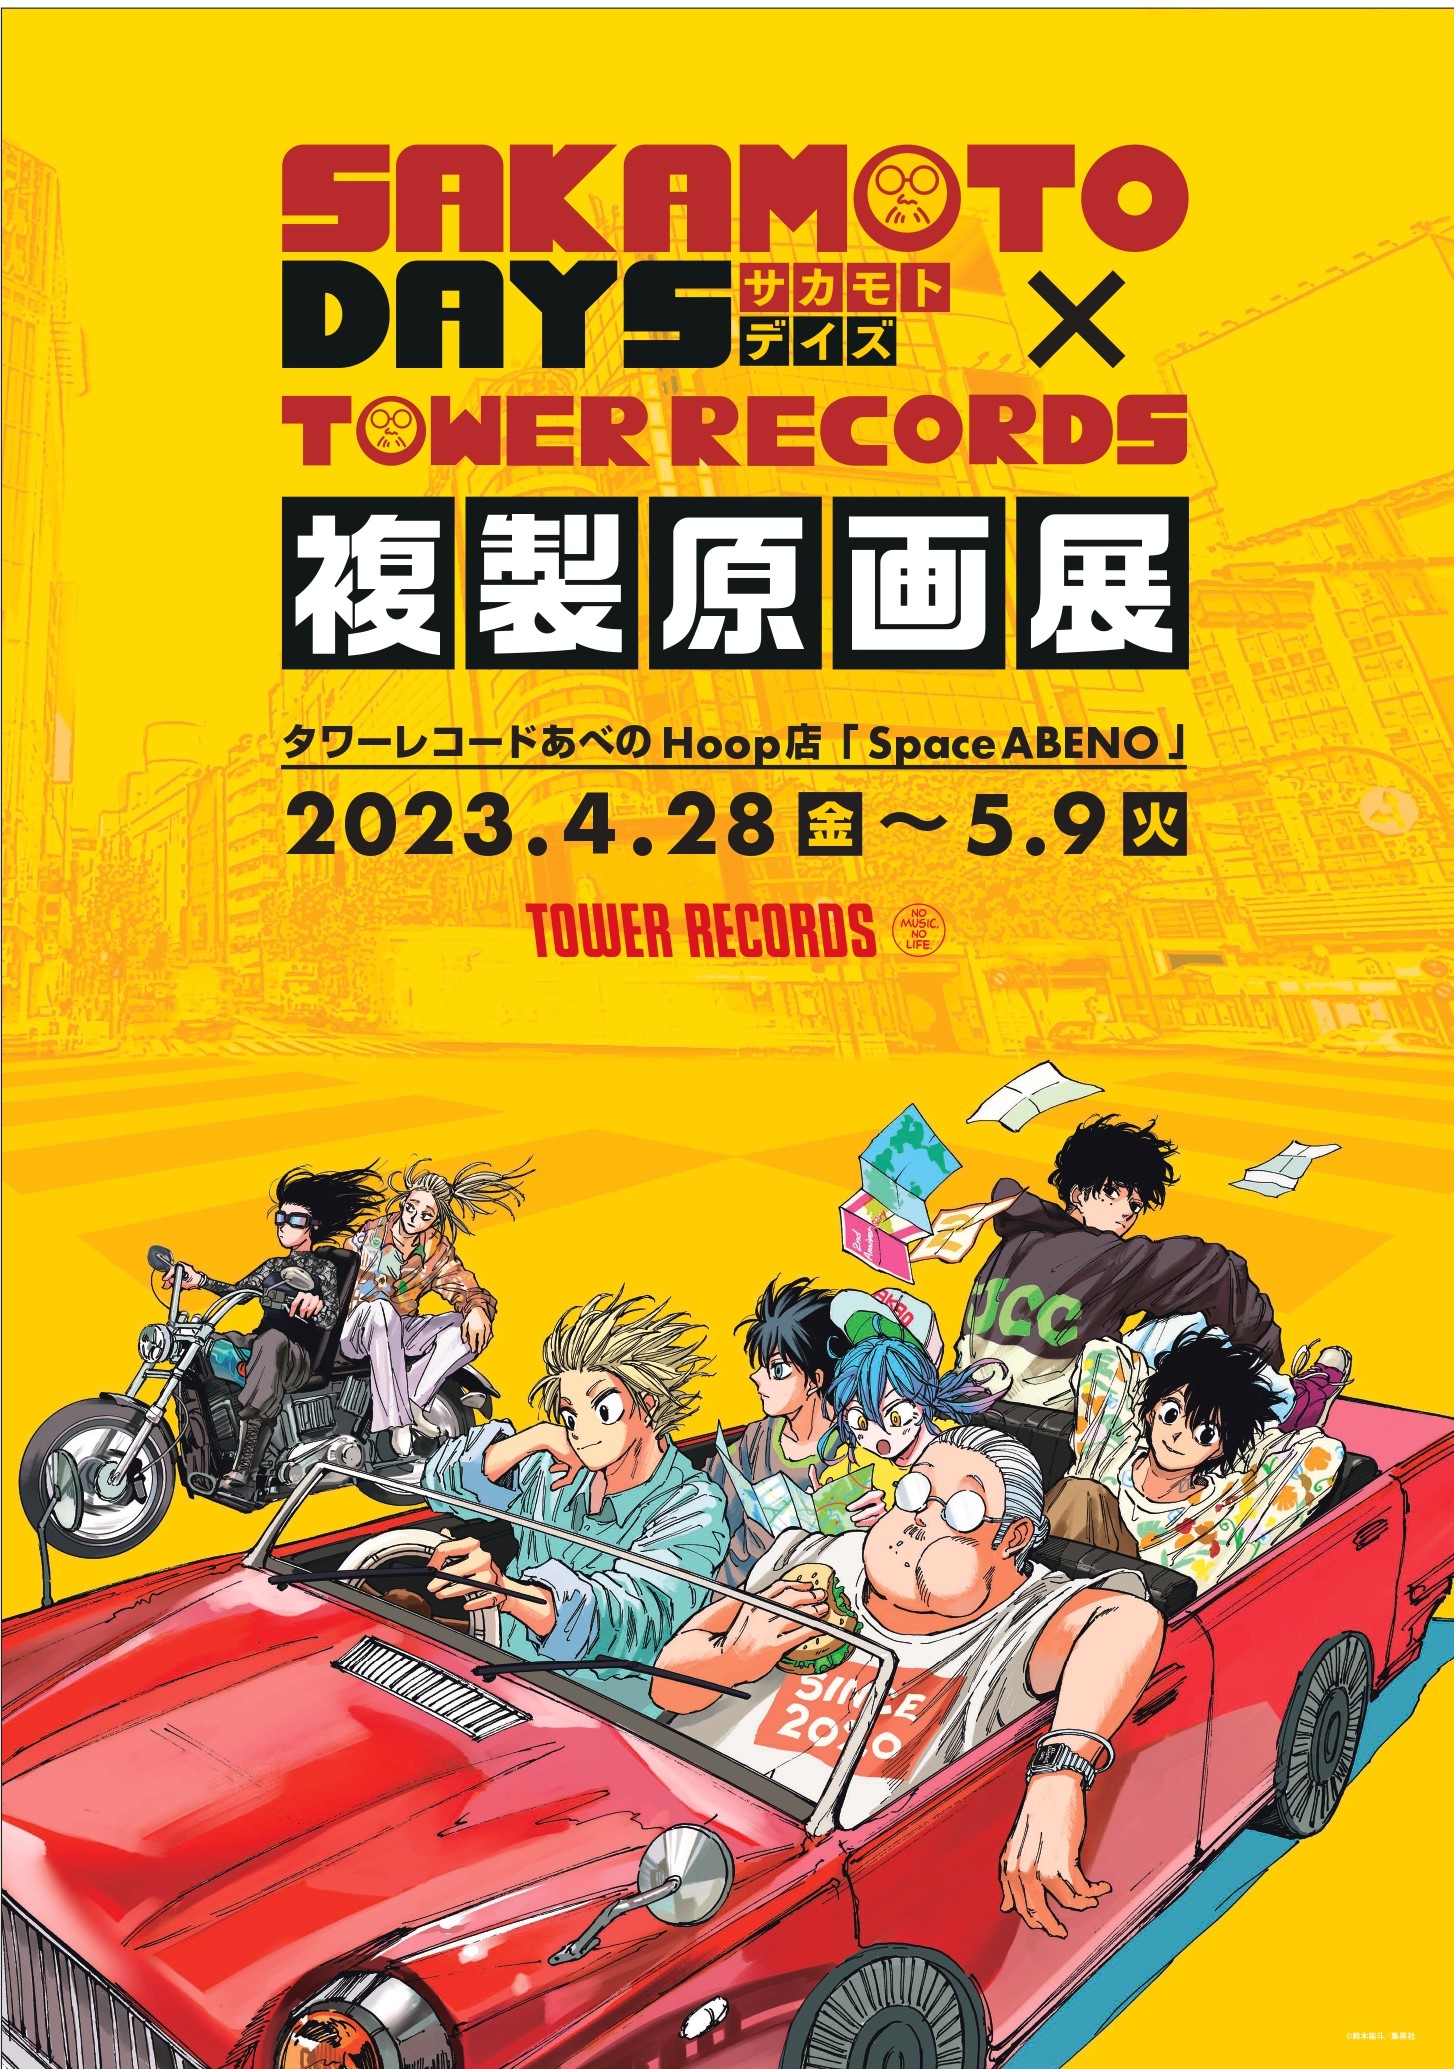 ※購入券付き入場整理券※【5/5(金・祝)】「『SAKAMOTO DAYS』×TOWER RECORDS 複製原画展」